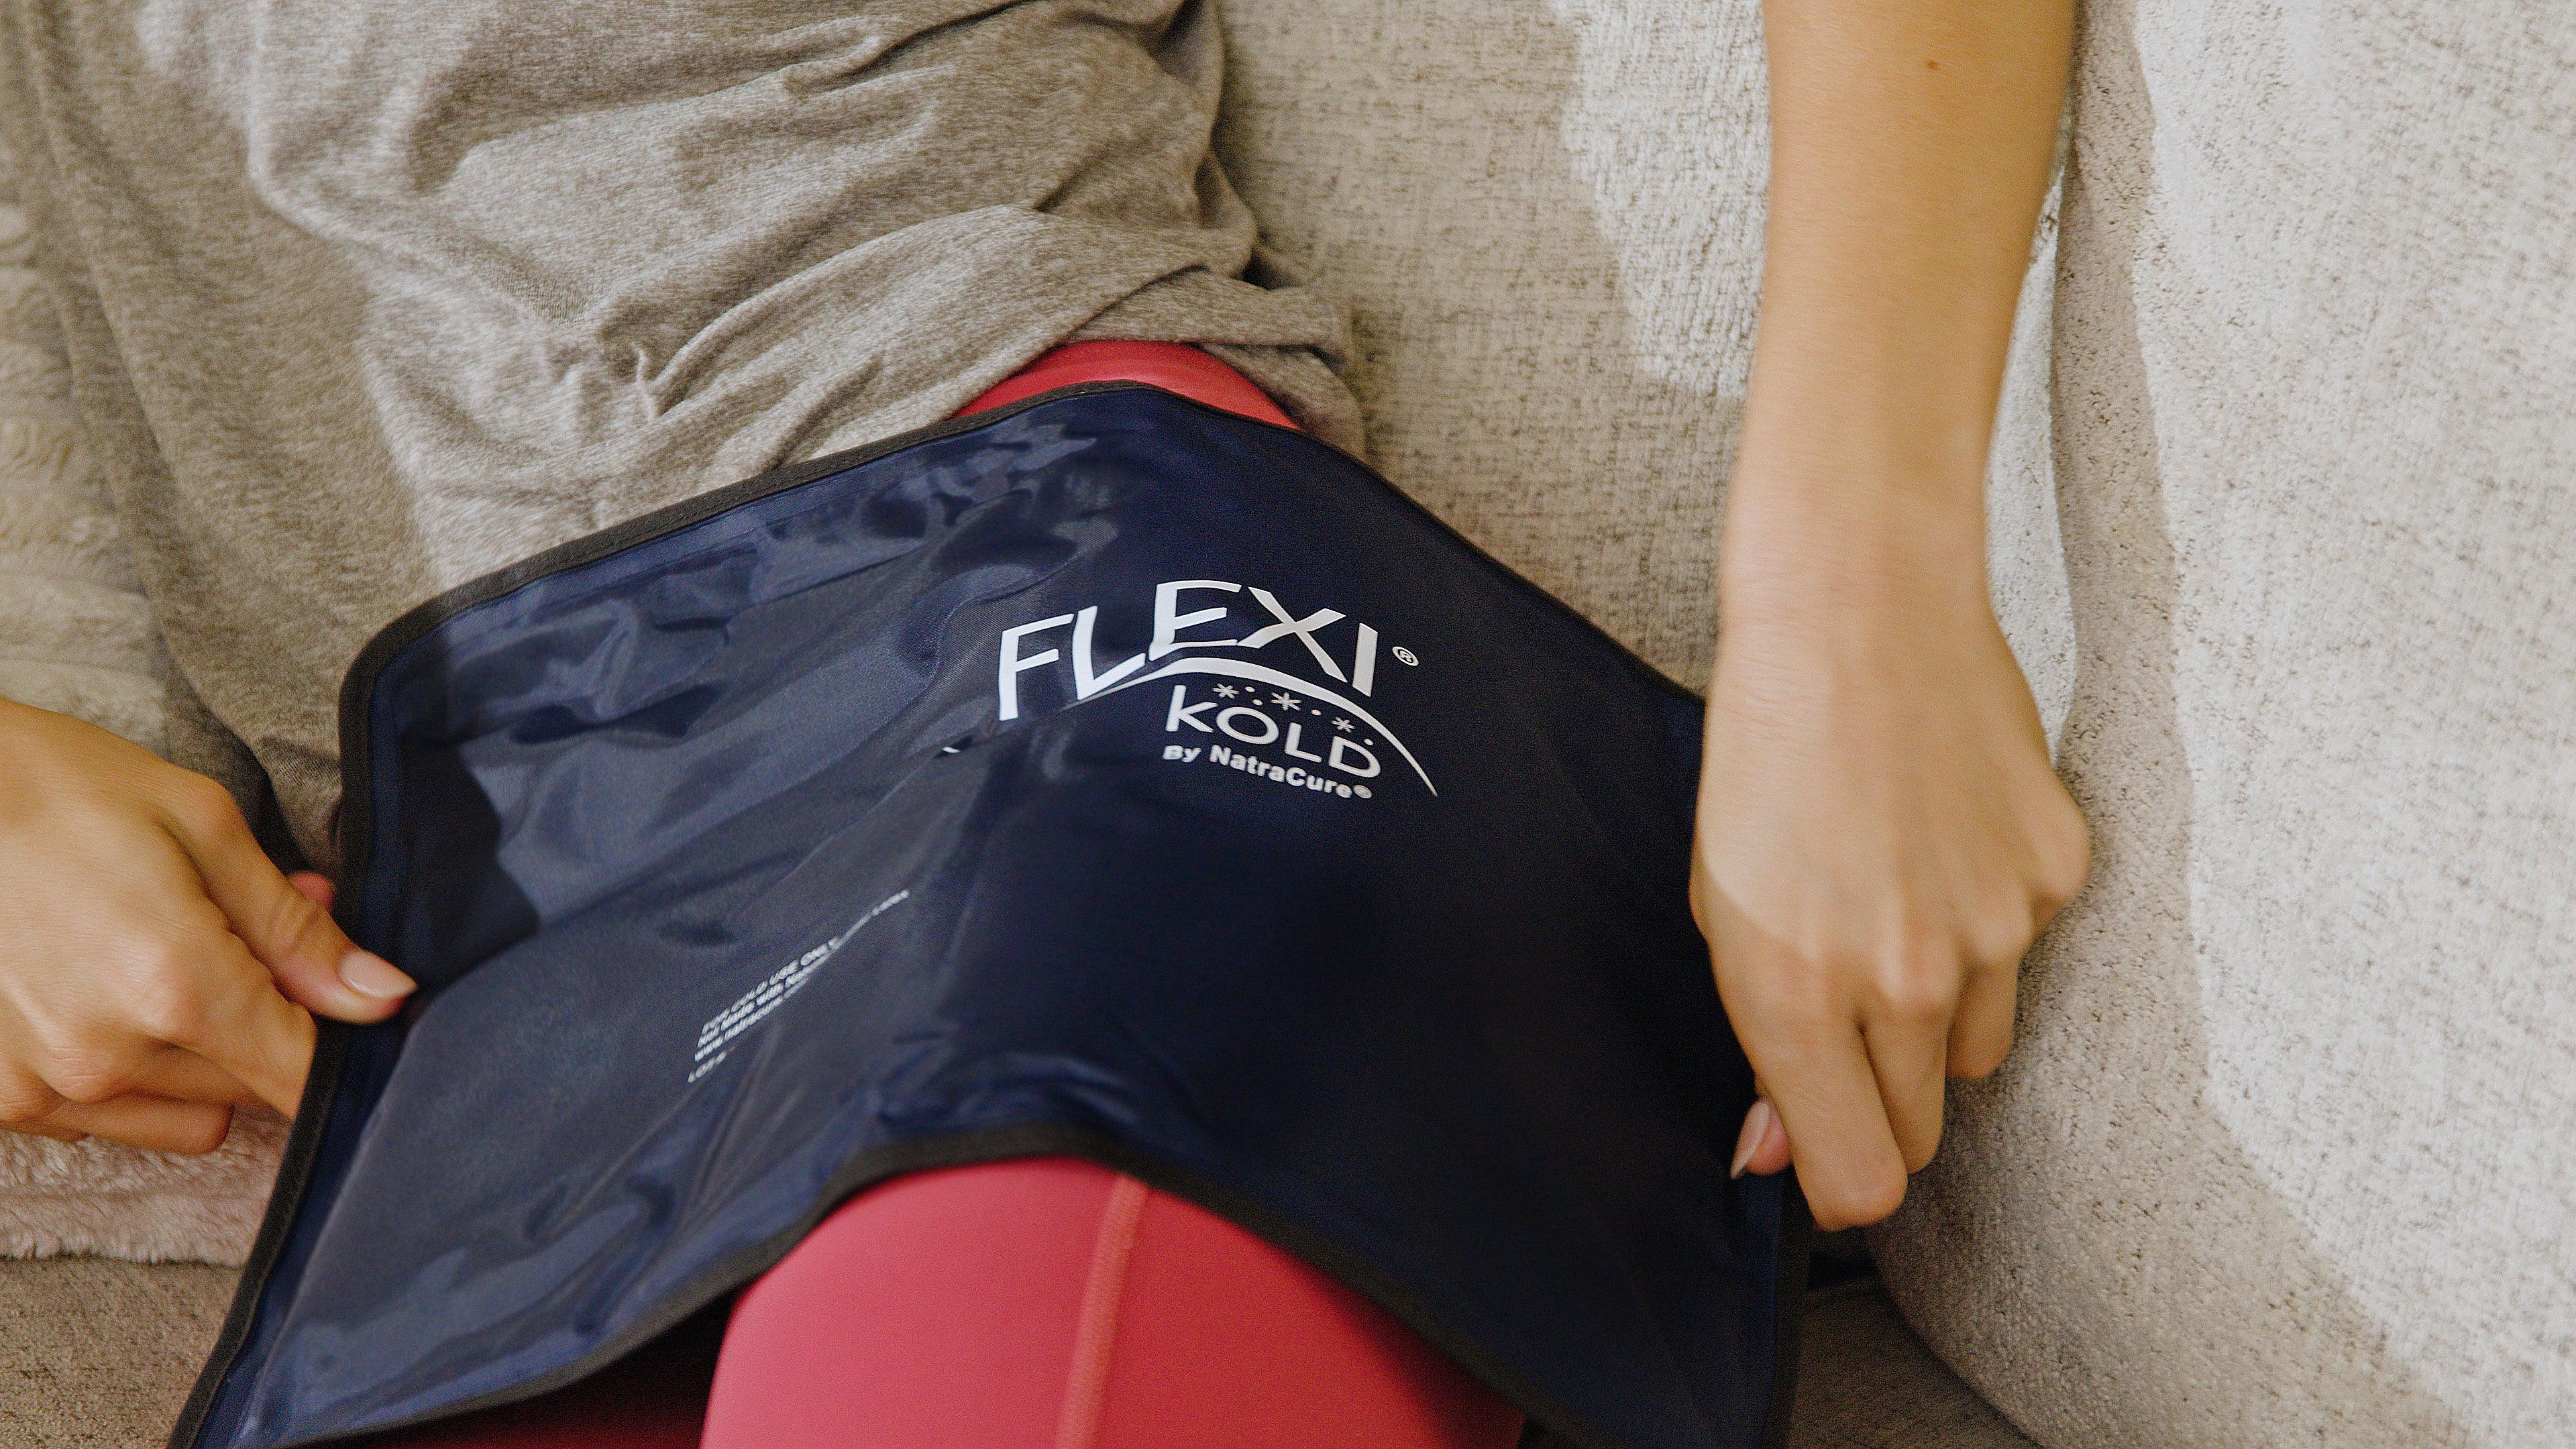 FlexiKold Gel Cold Pack on leg